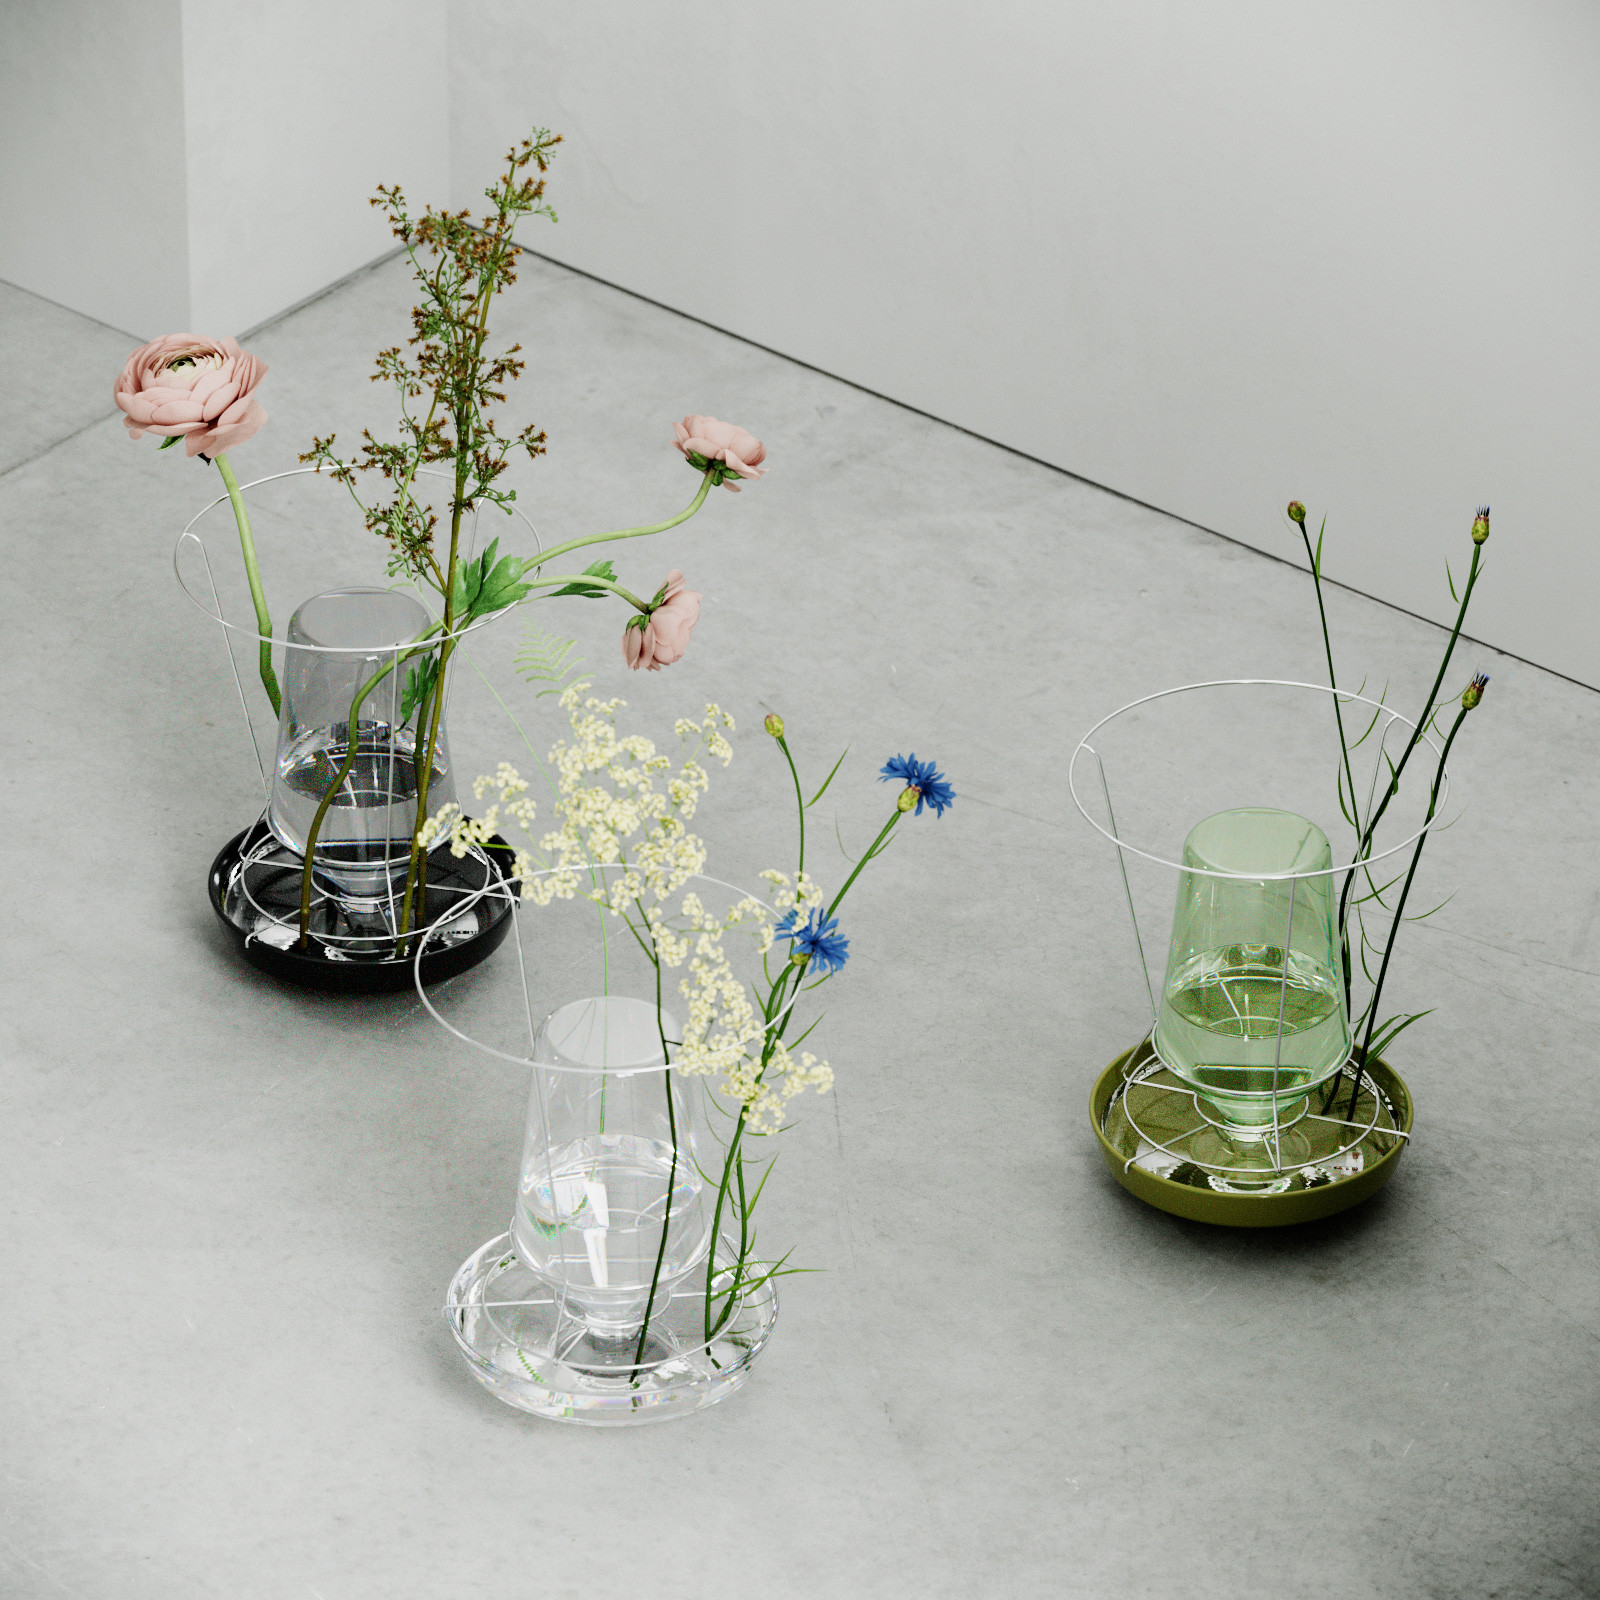 Three unusual vases with flowers